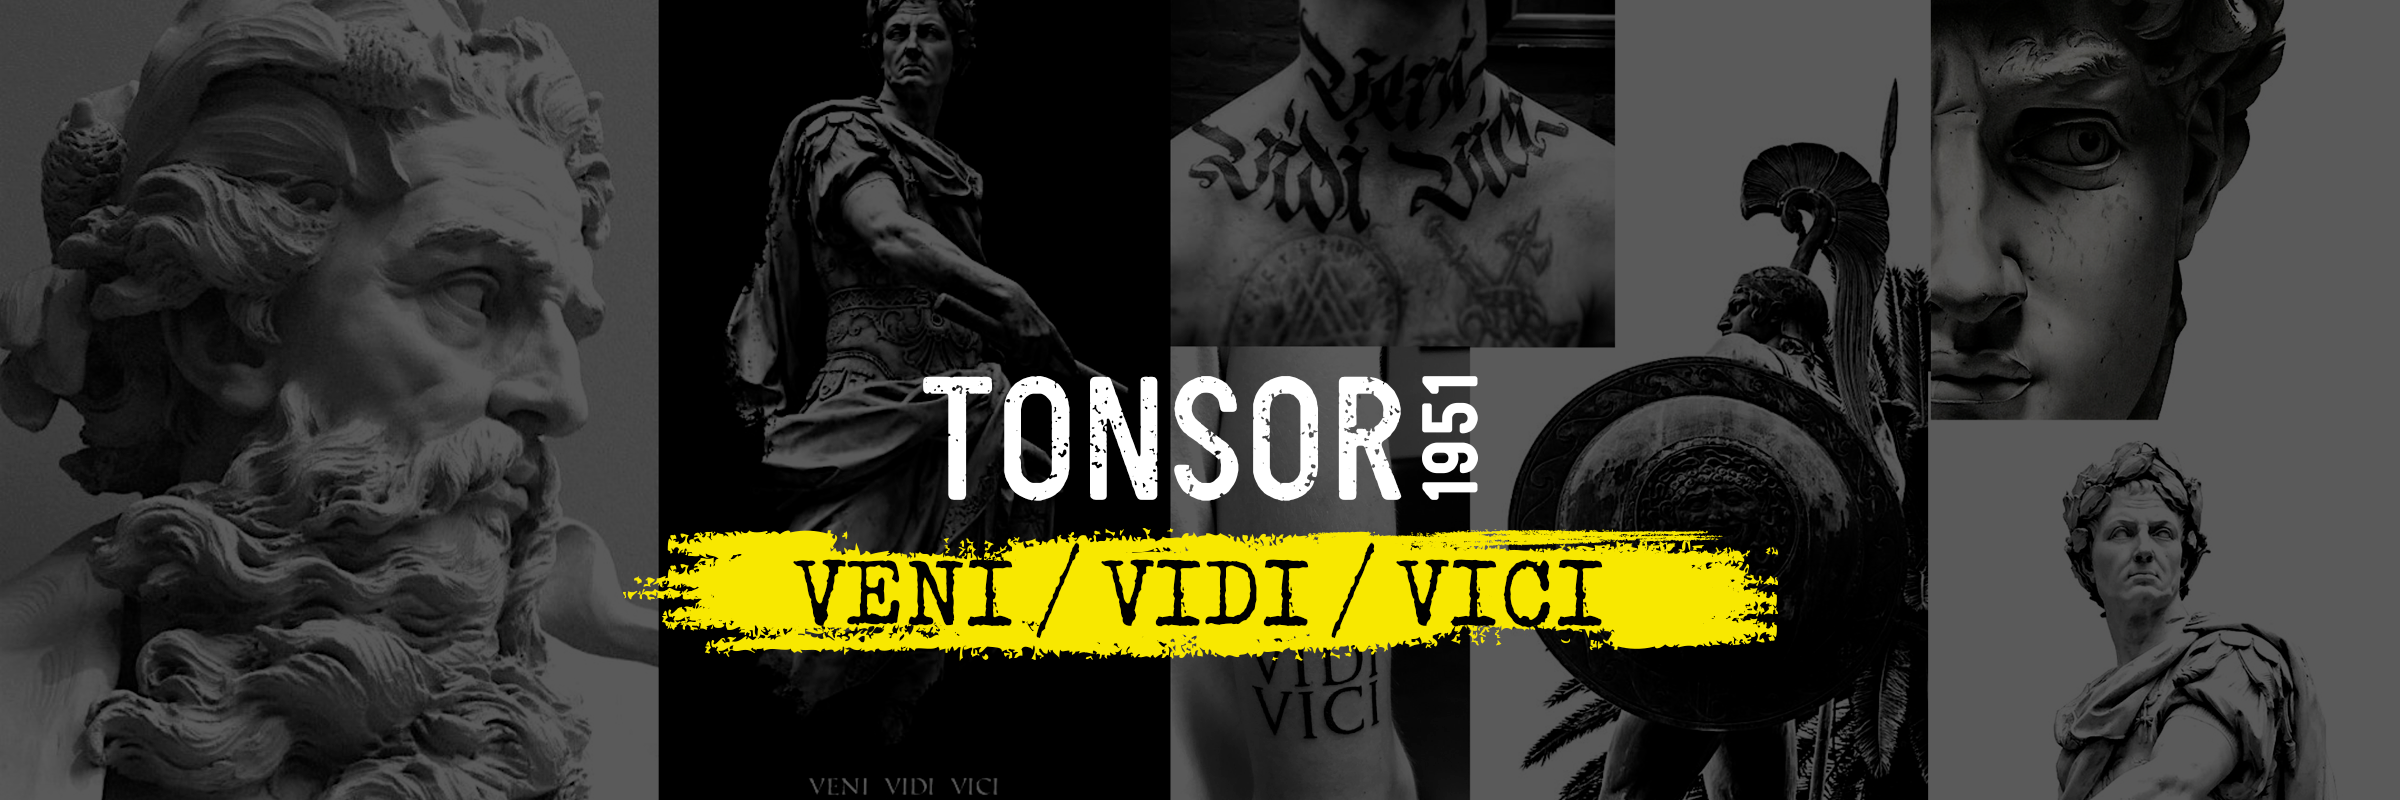 Tonsor1951 VENI / VIDI / VICI